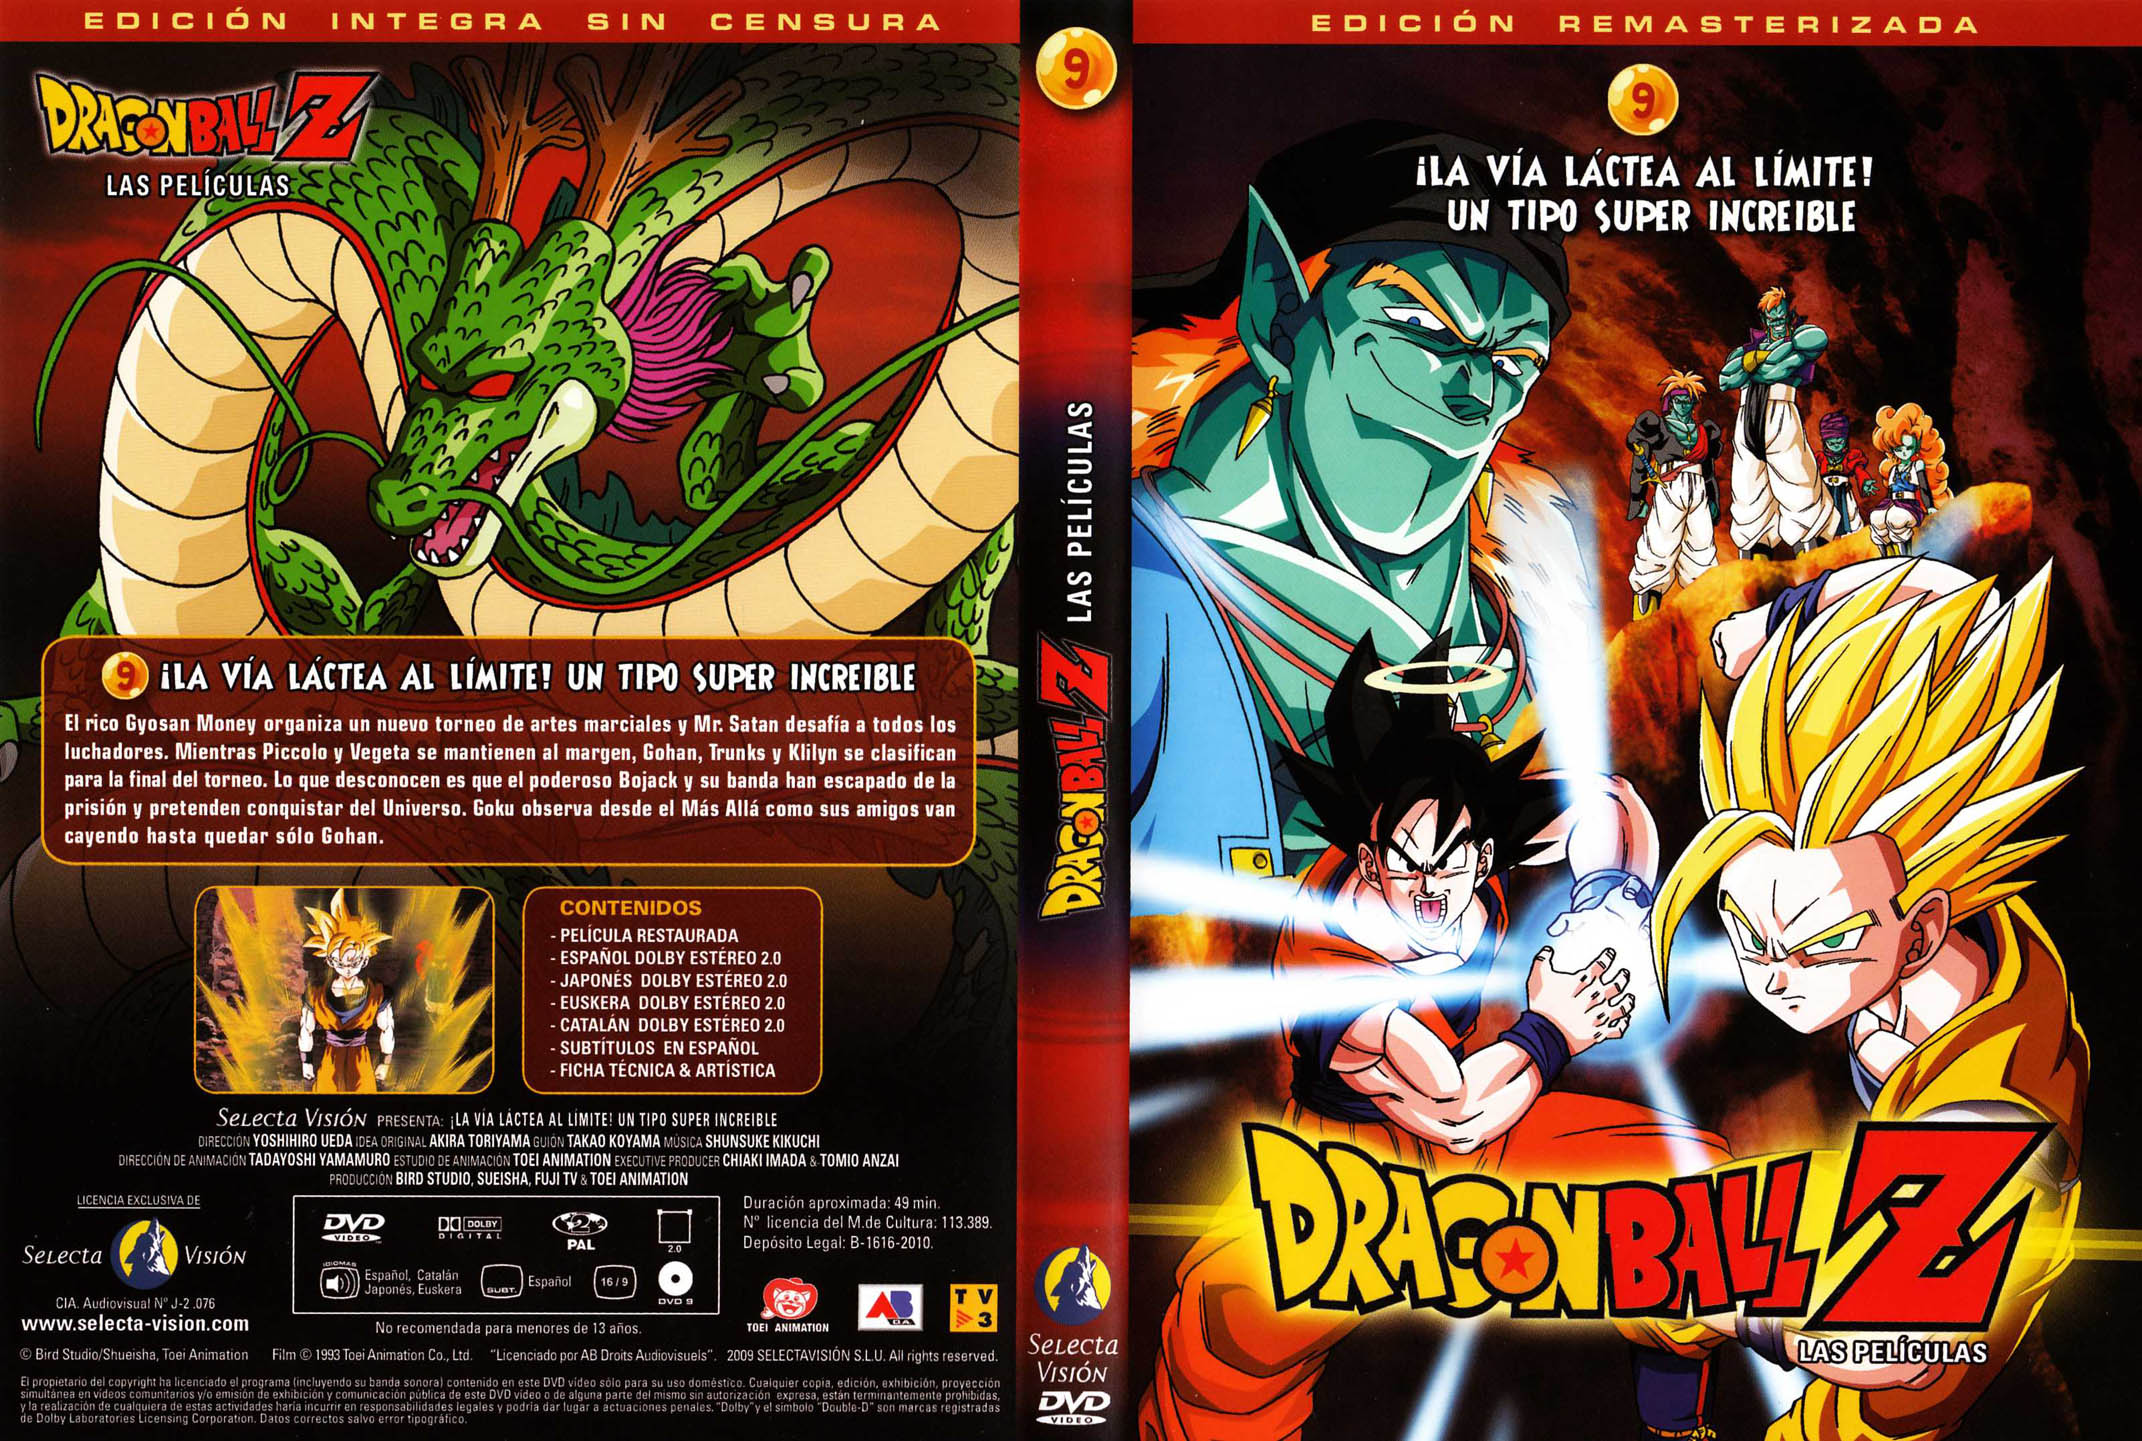 09-Los_guerreros_de_plata - [DD] Dragon Ball Z Película 9 La Galaxia Corre Peligro - Anime Ligero [Descargas]